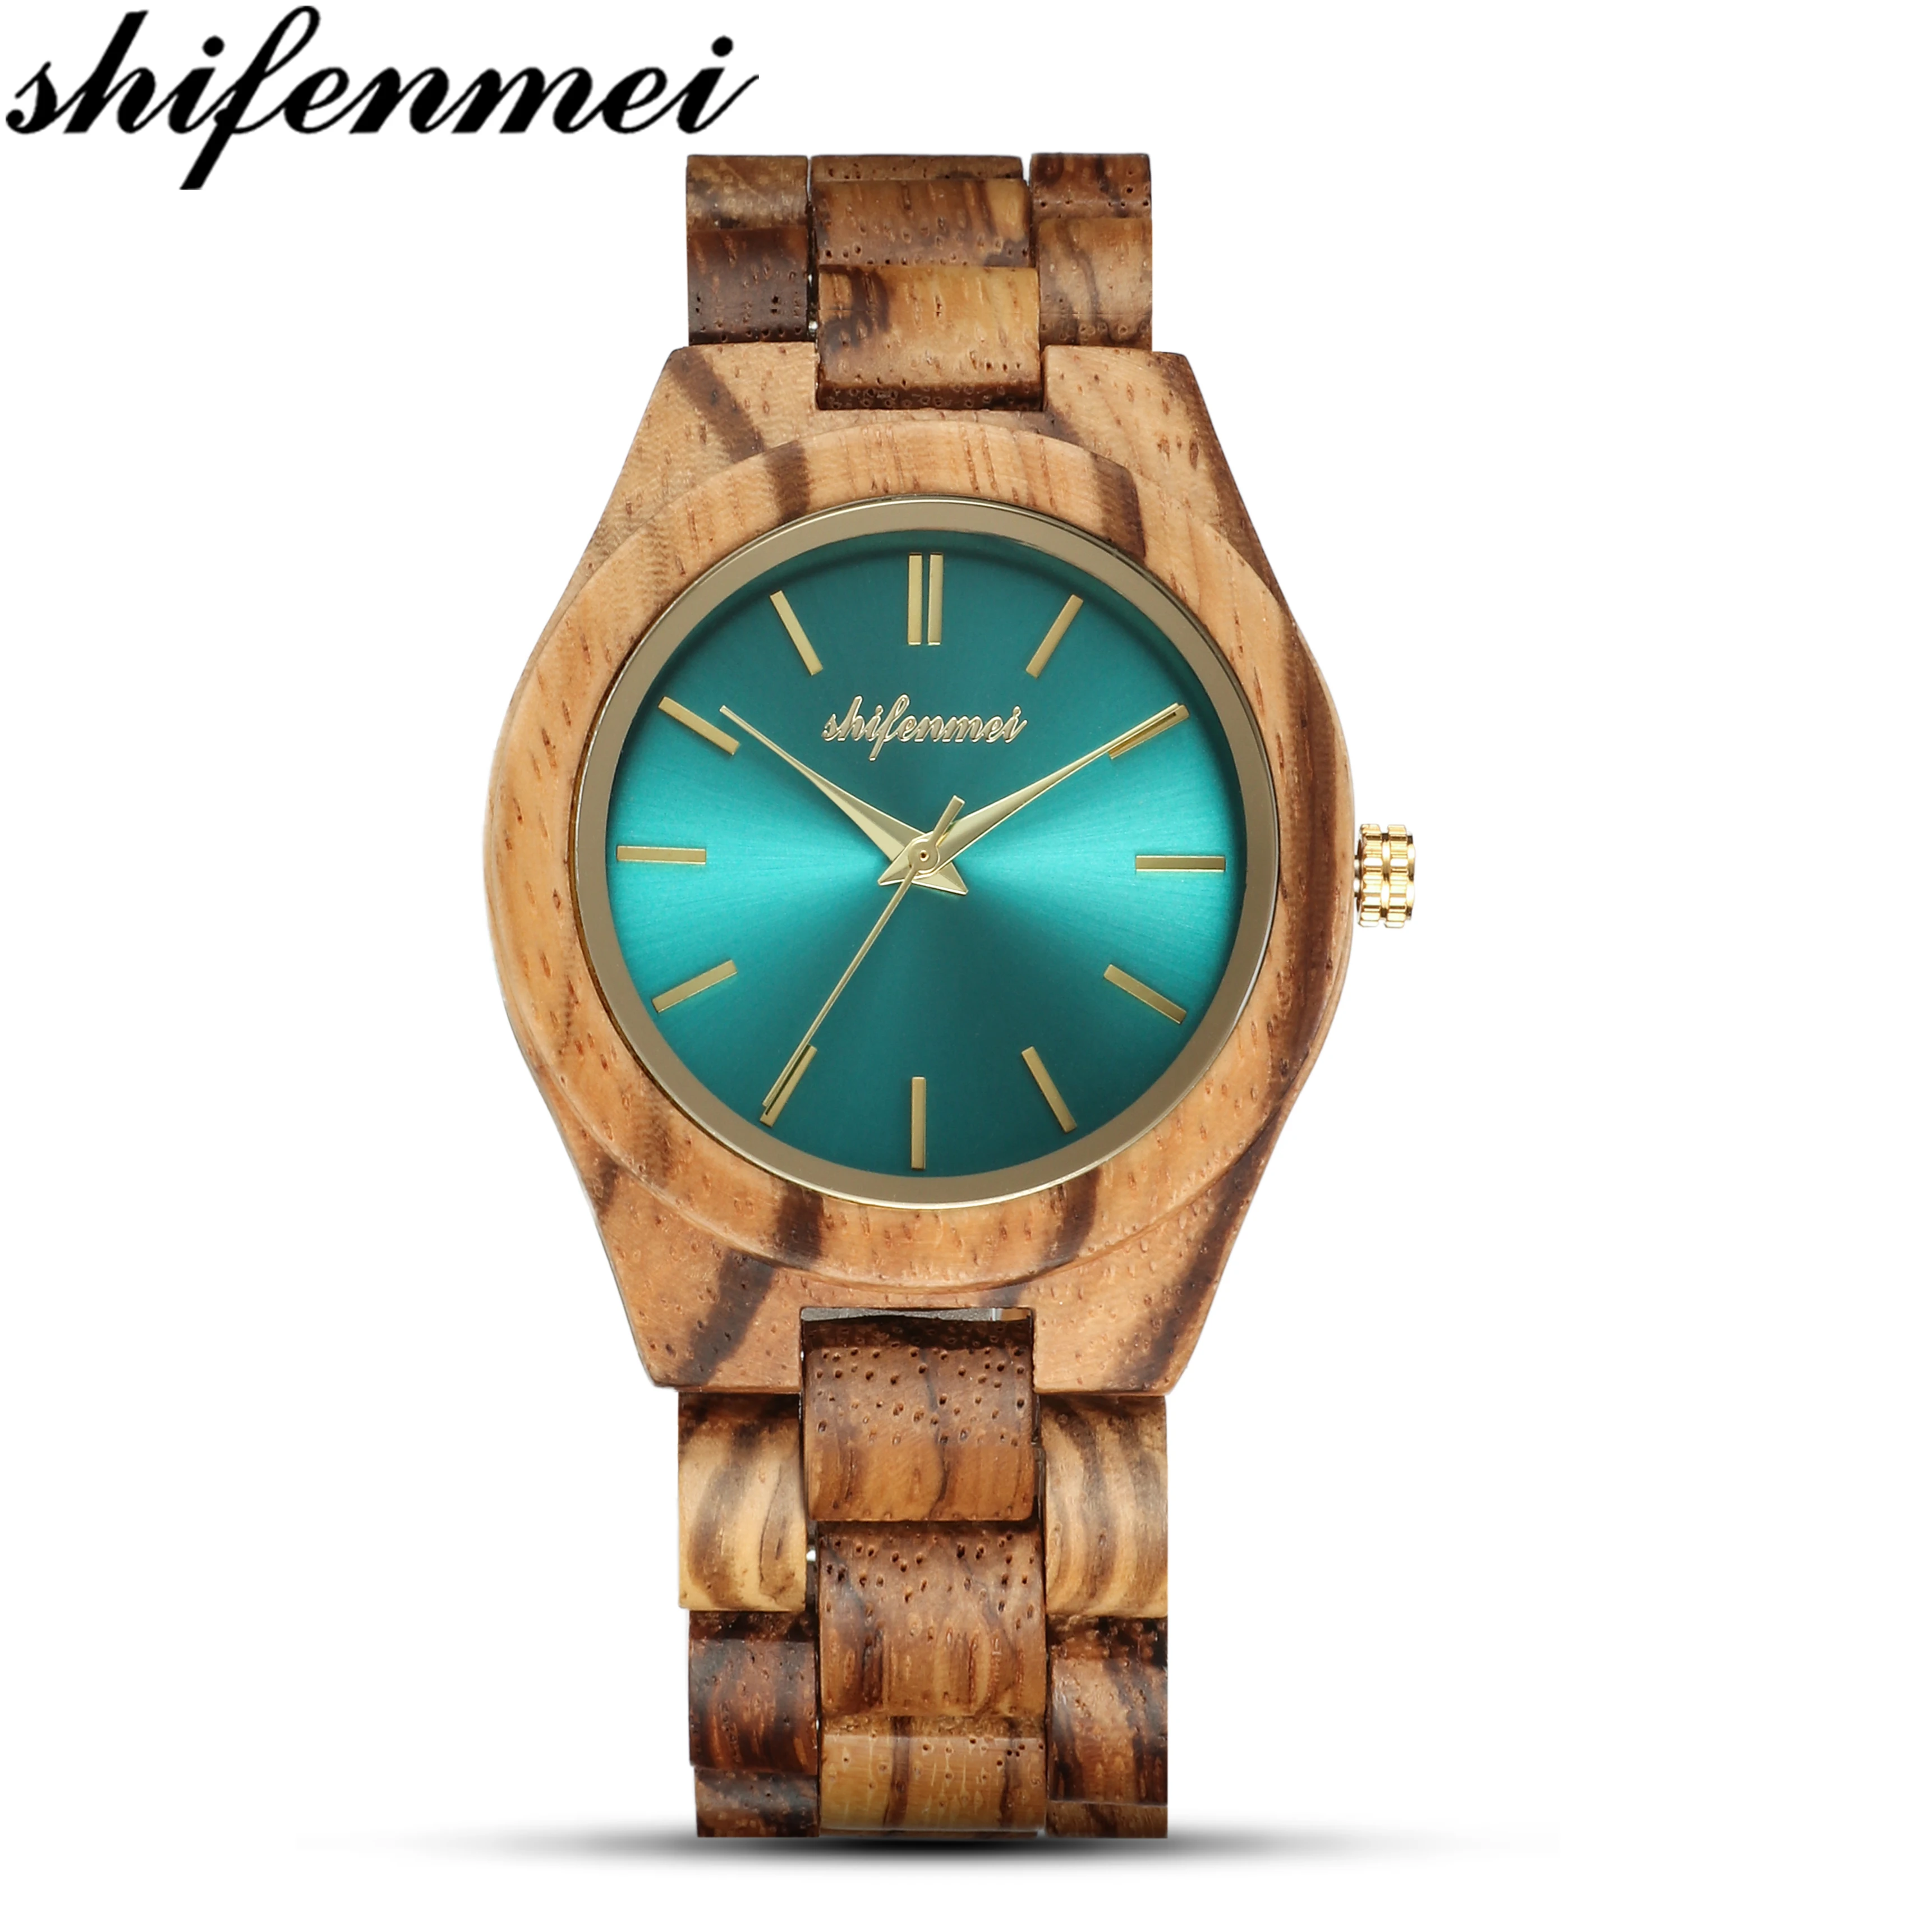 Shifenmei лучший бренд роскошные деревянные часы женские кварцевые часы женские полные деревянные наручные часы отличный подарок для женщин 5563